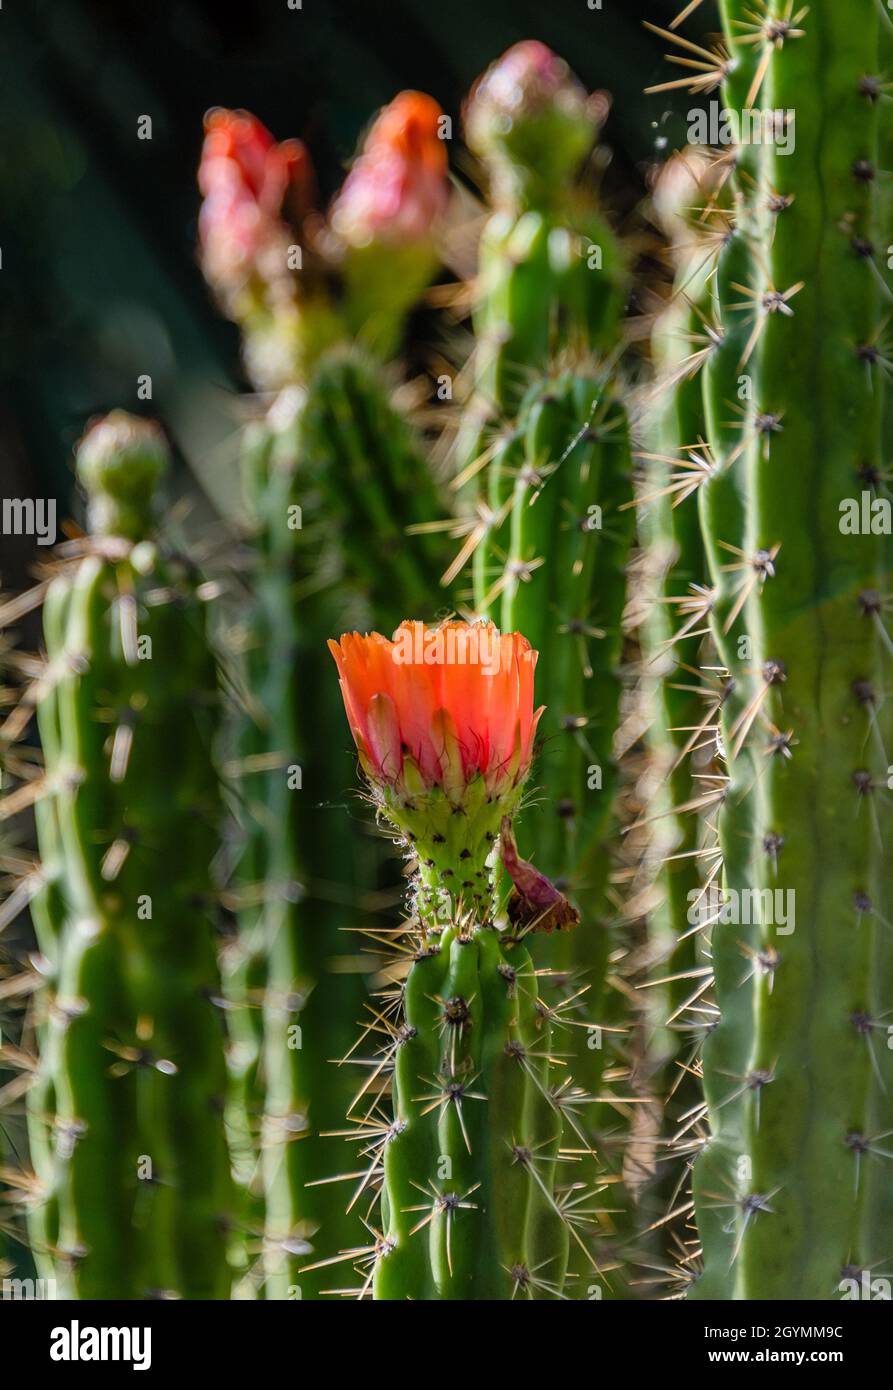 Corryocactus melanotrichus cactus in bloom Stock Photo